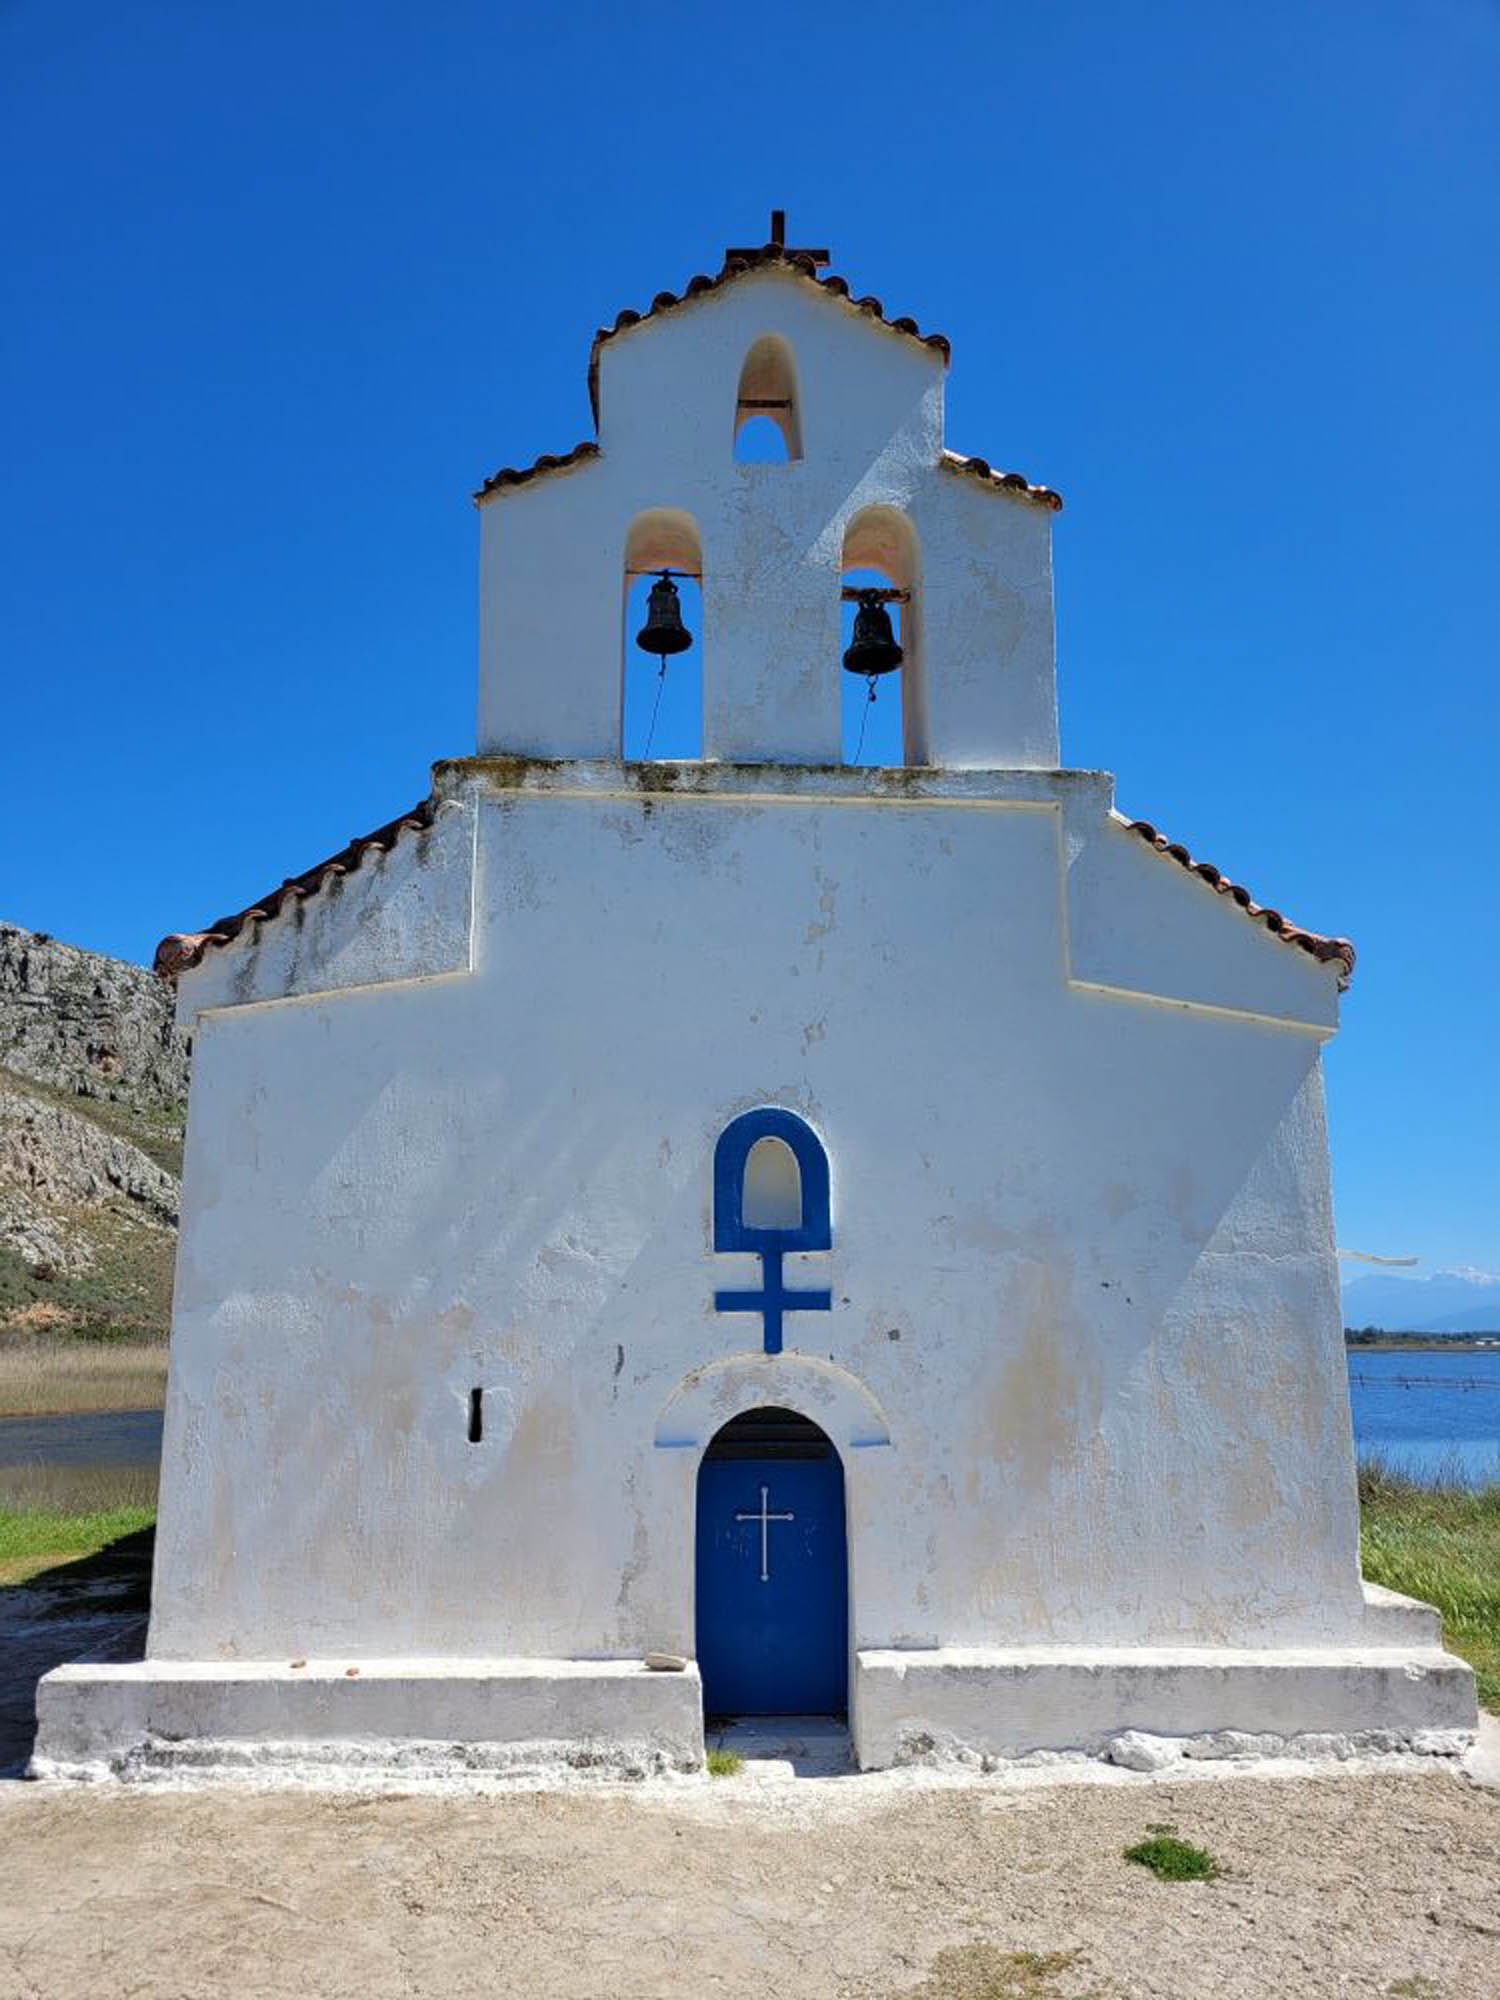 niebiesko-biała kapliczka, mała cerkiewka na brzegu, w tle niebieskie niebo i woda